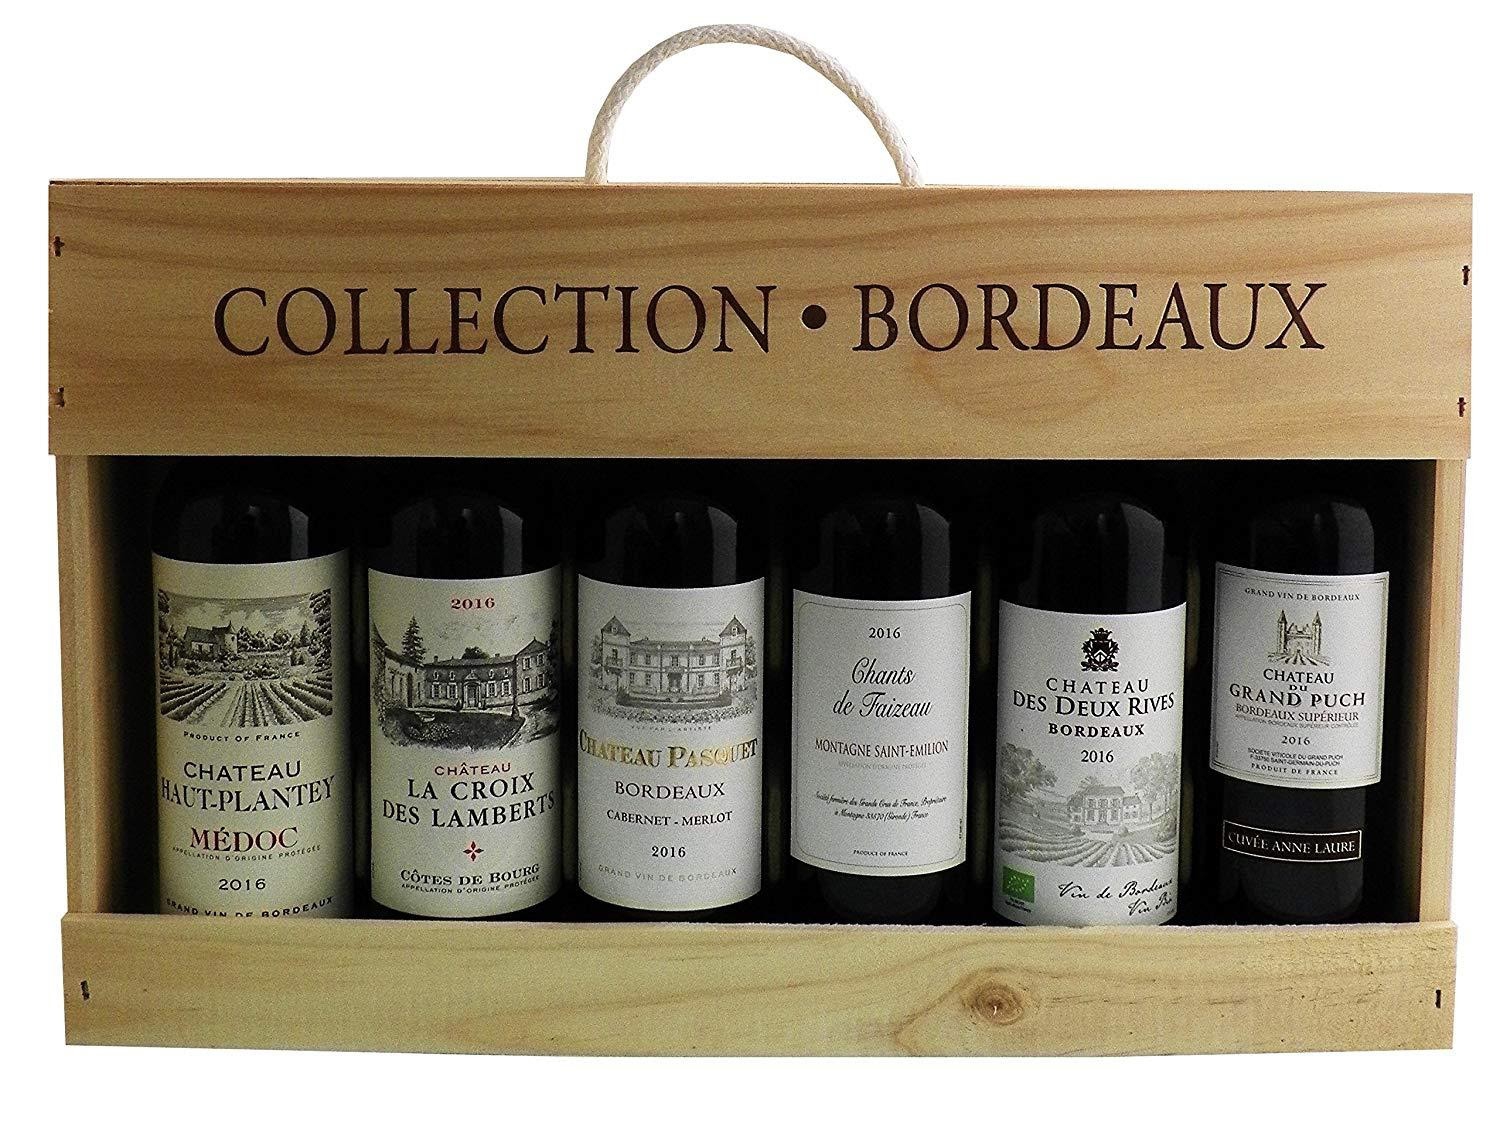 Káº¿t quáº£ hÃ¬nh áº£nh cho Bordeaux wine